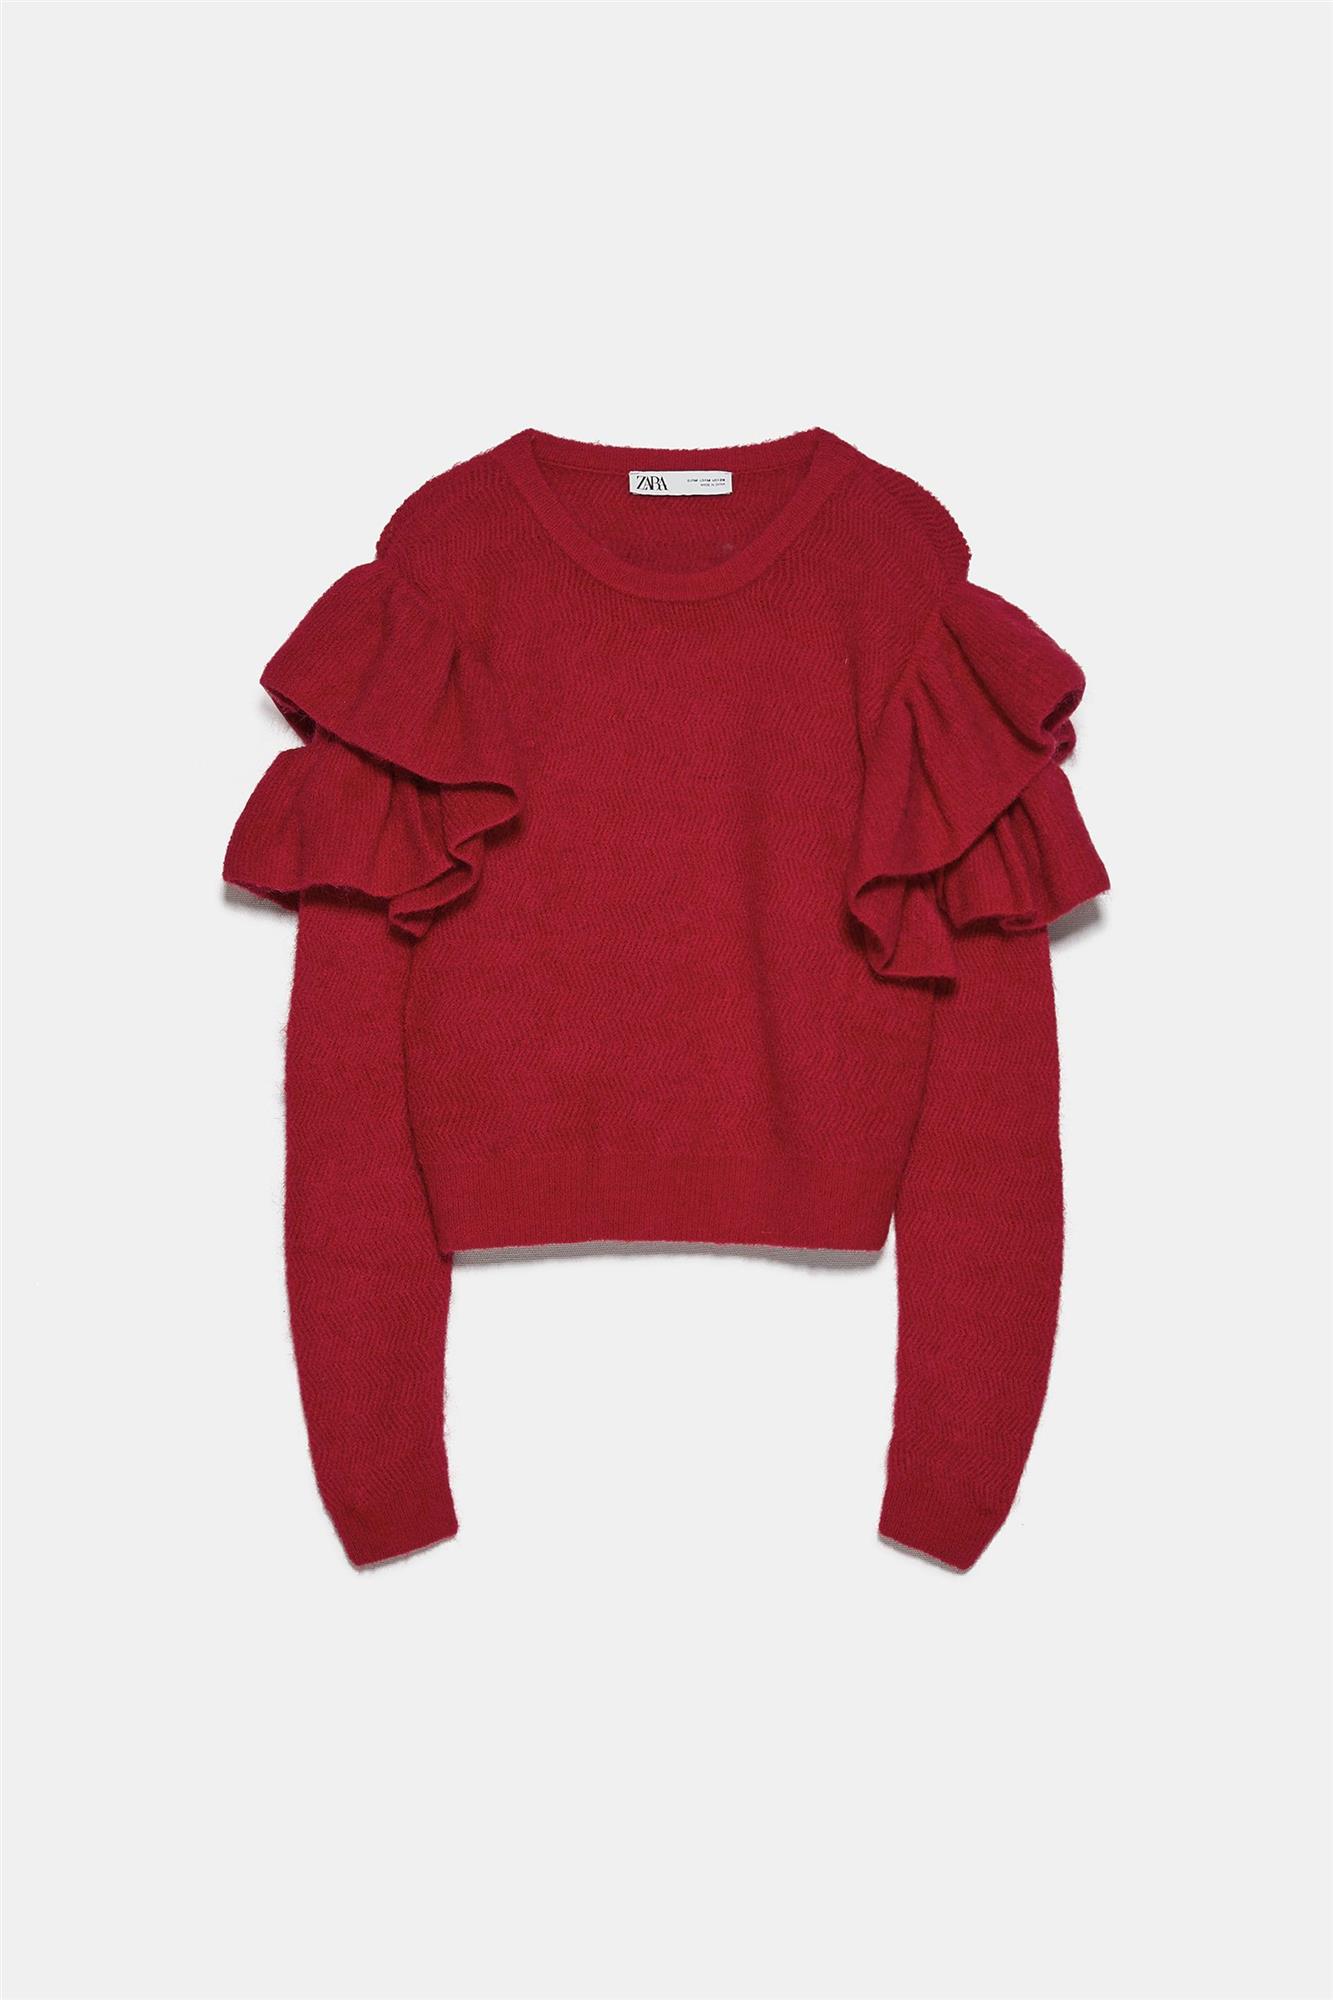 5755114600 6 1 1. Jersey de volantes de mohair y lana en rojo, de Zara